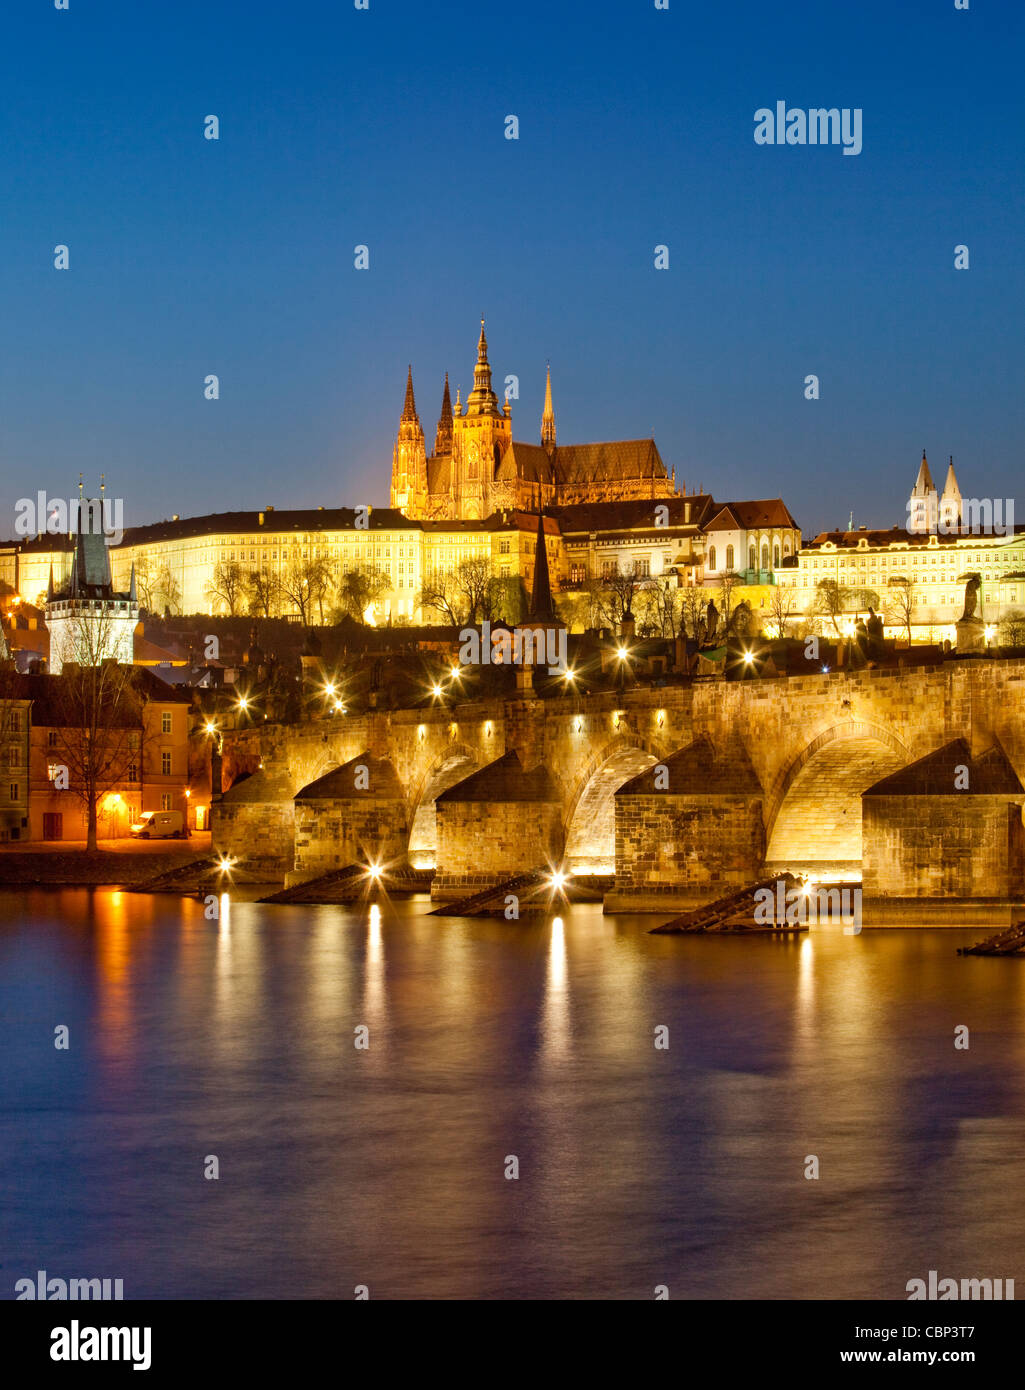 República Checa, Praga - Puente de Carlos y el castillo de hradcany al atardecer Foto de stock